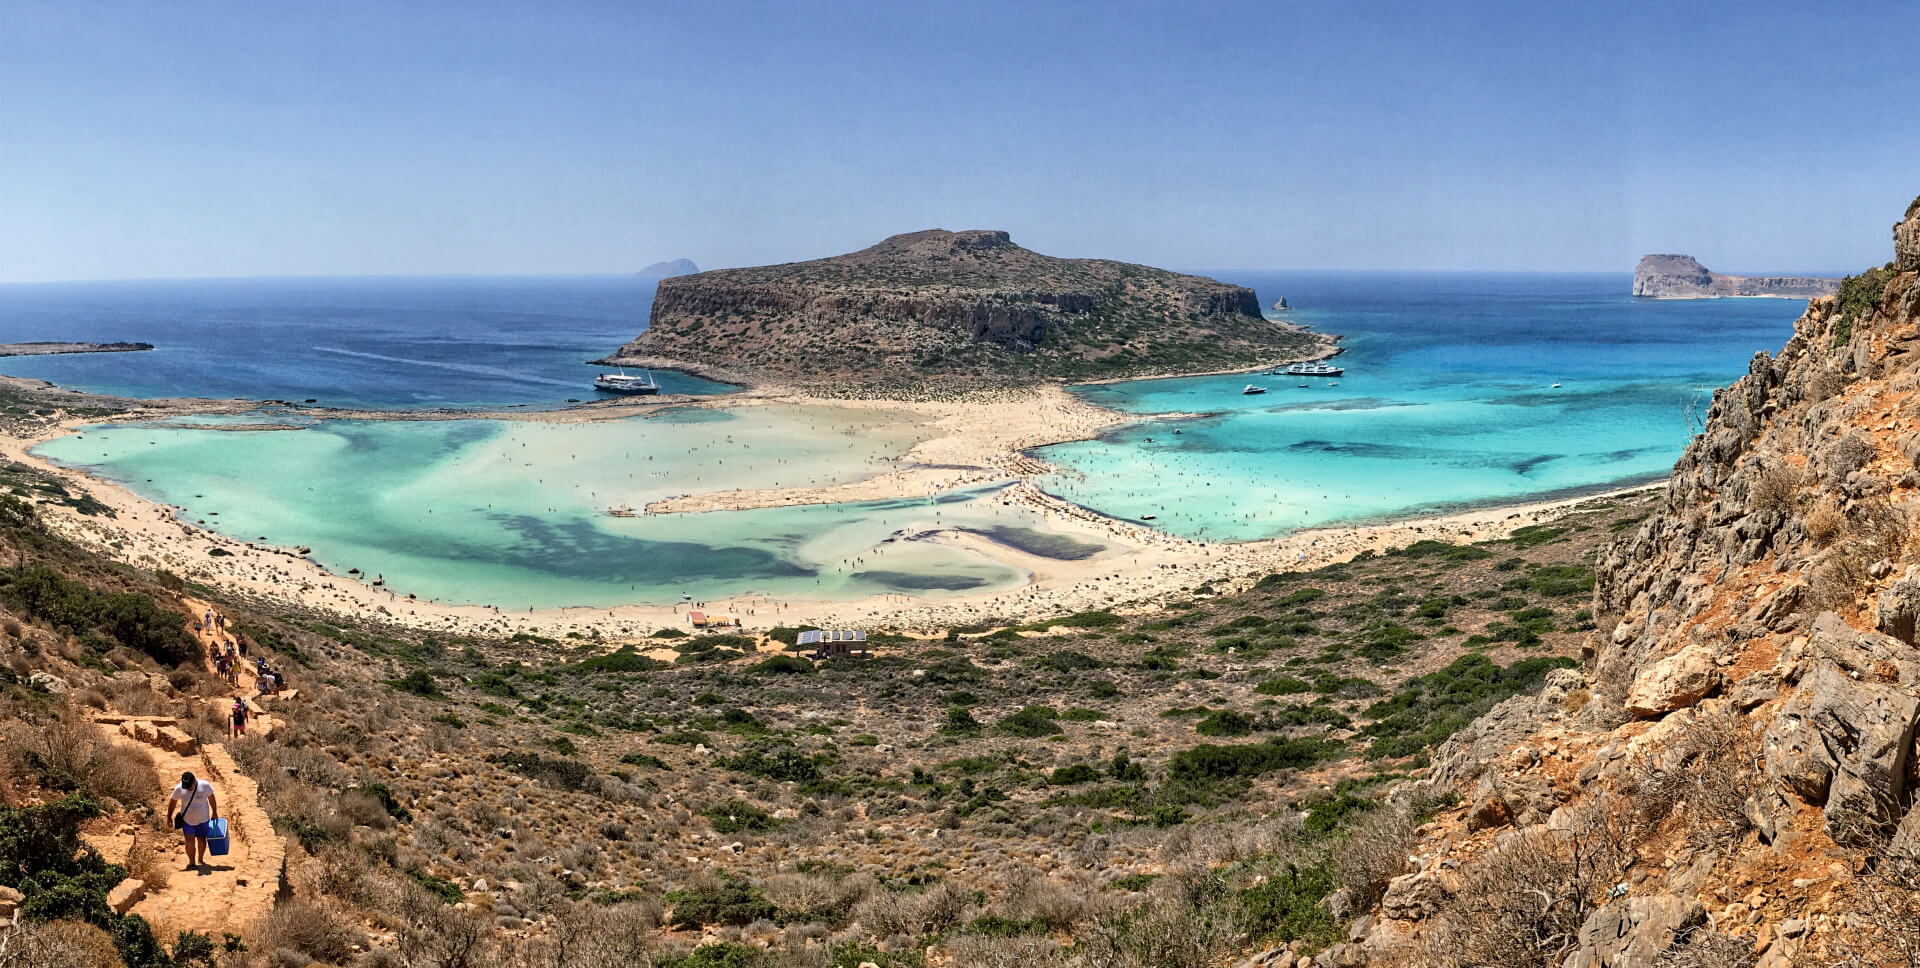 Περιήγηση στη λιμνοθάλασσα του Μπάλου στην Κρήτη